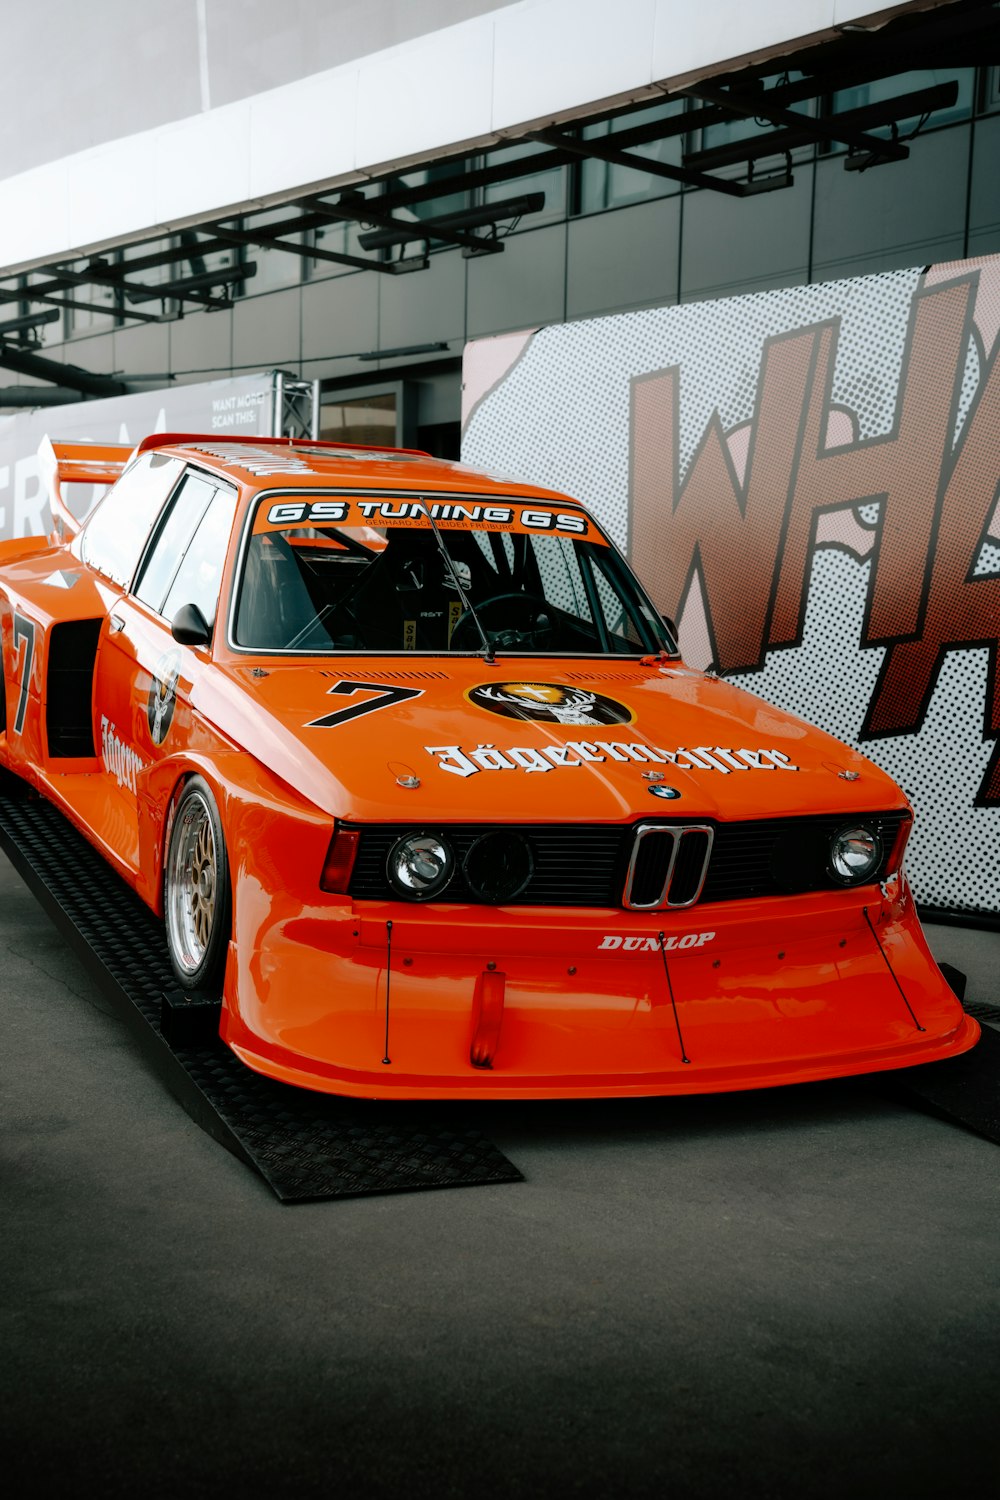 an orange race car parked in a garage